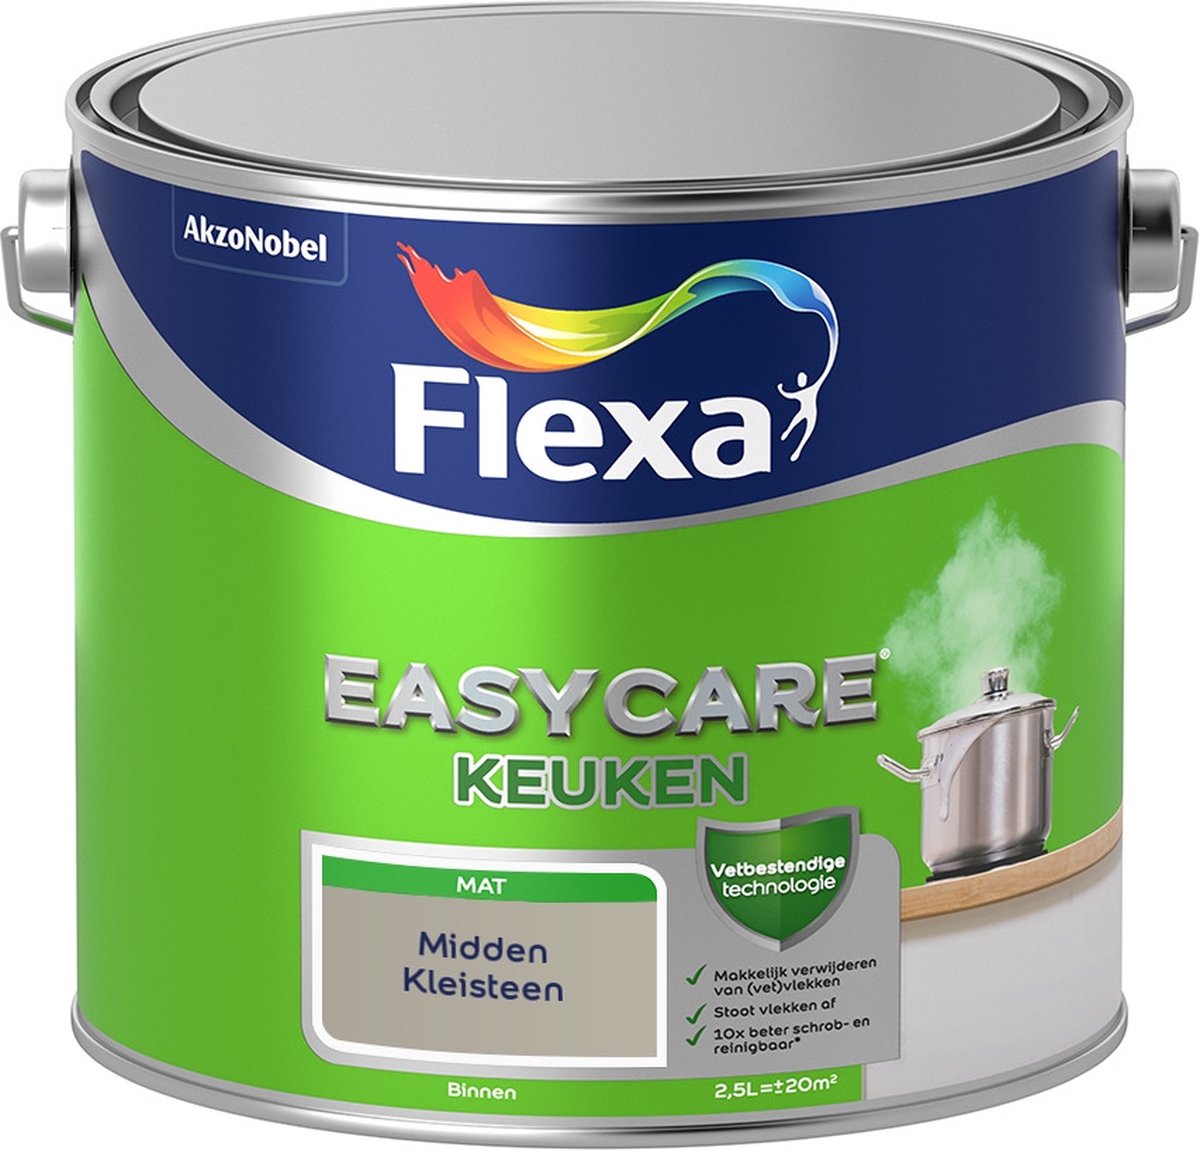 Flexa Easycare Muurverf - Keuken - Mat - Mengkleur - Midden Kleisteen - 2,5 liter